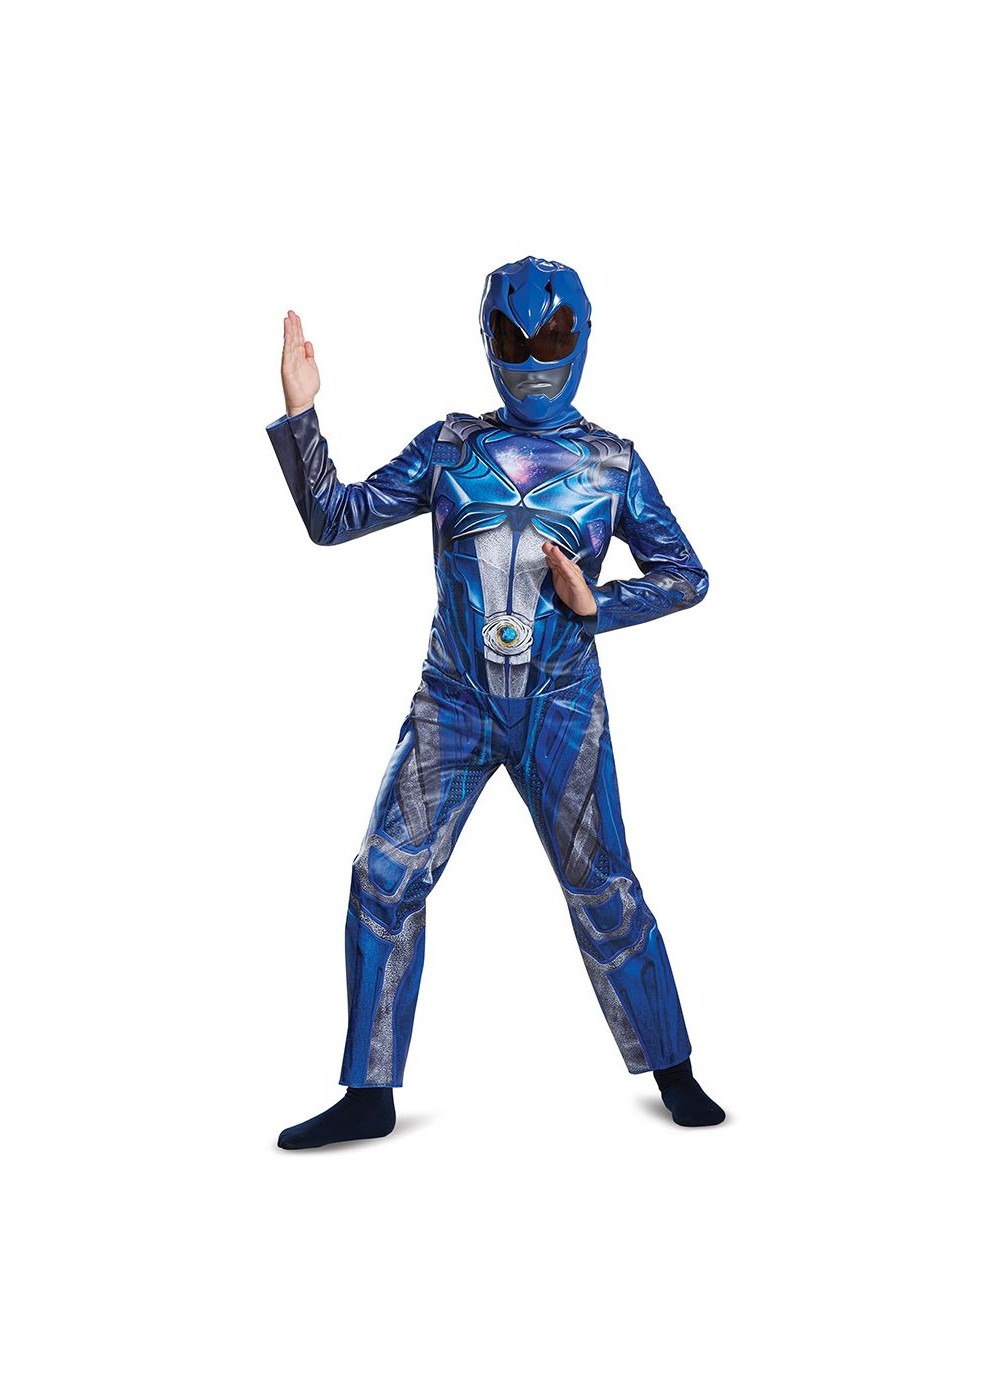 Boys Blue Power Ranger Movie Costume